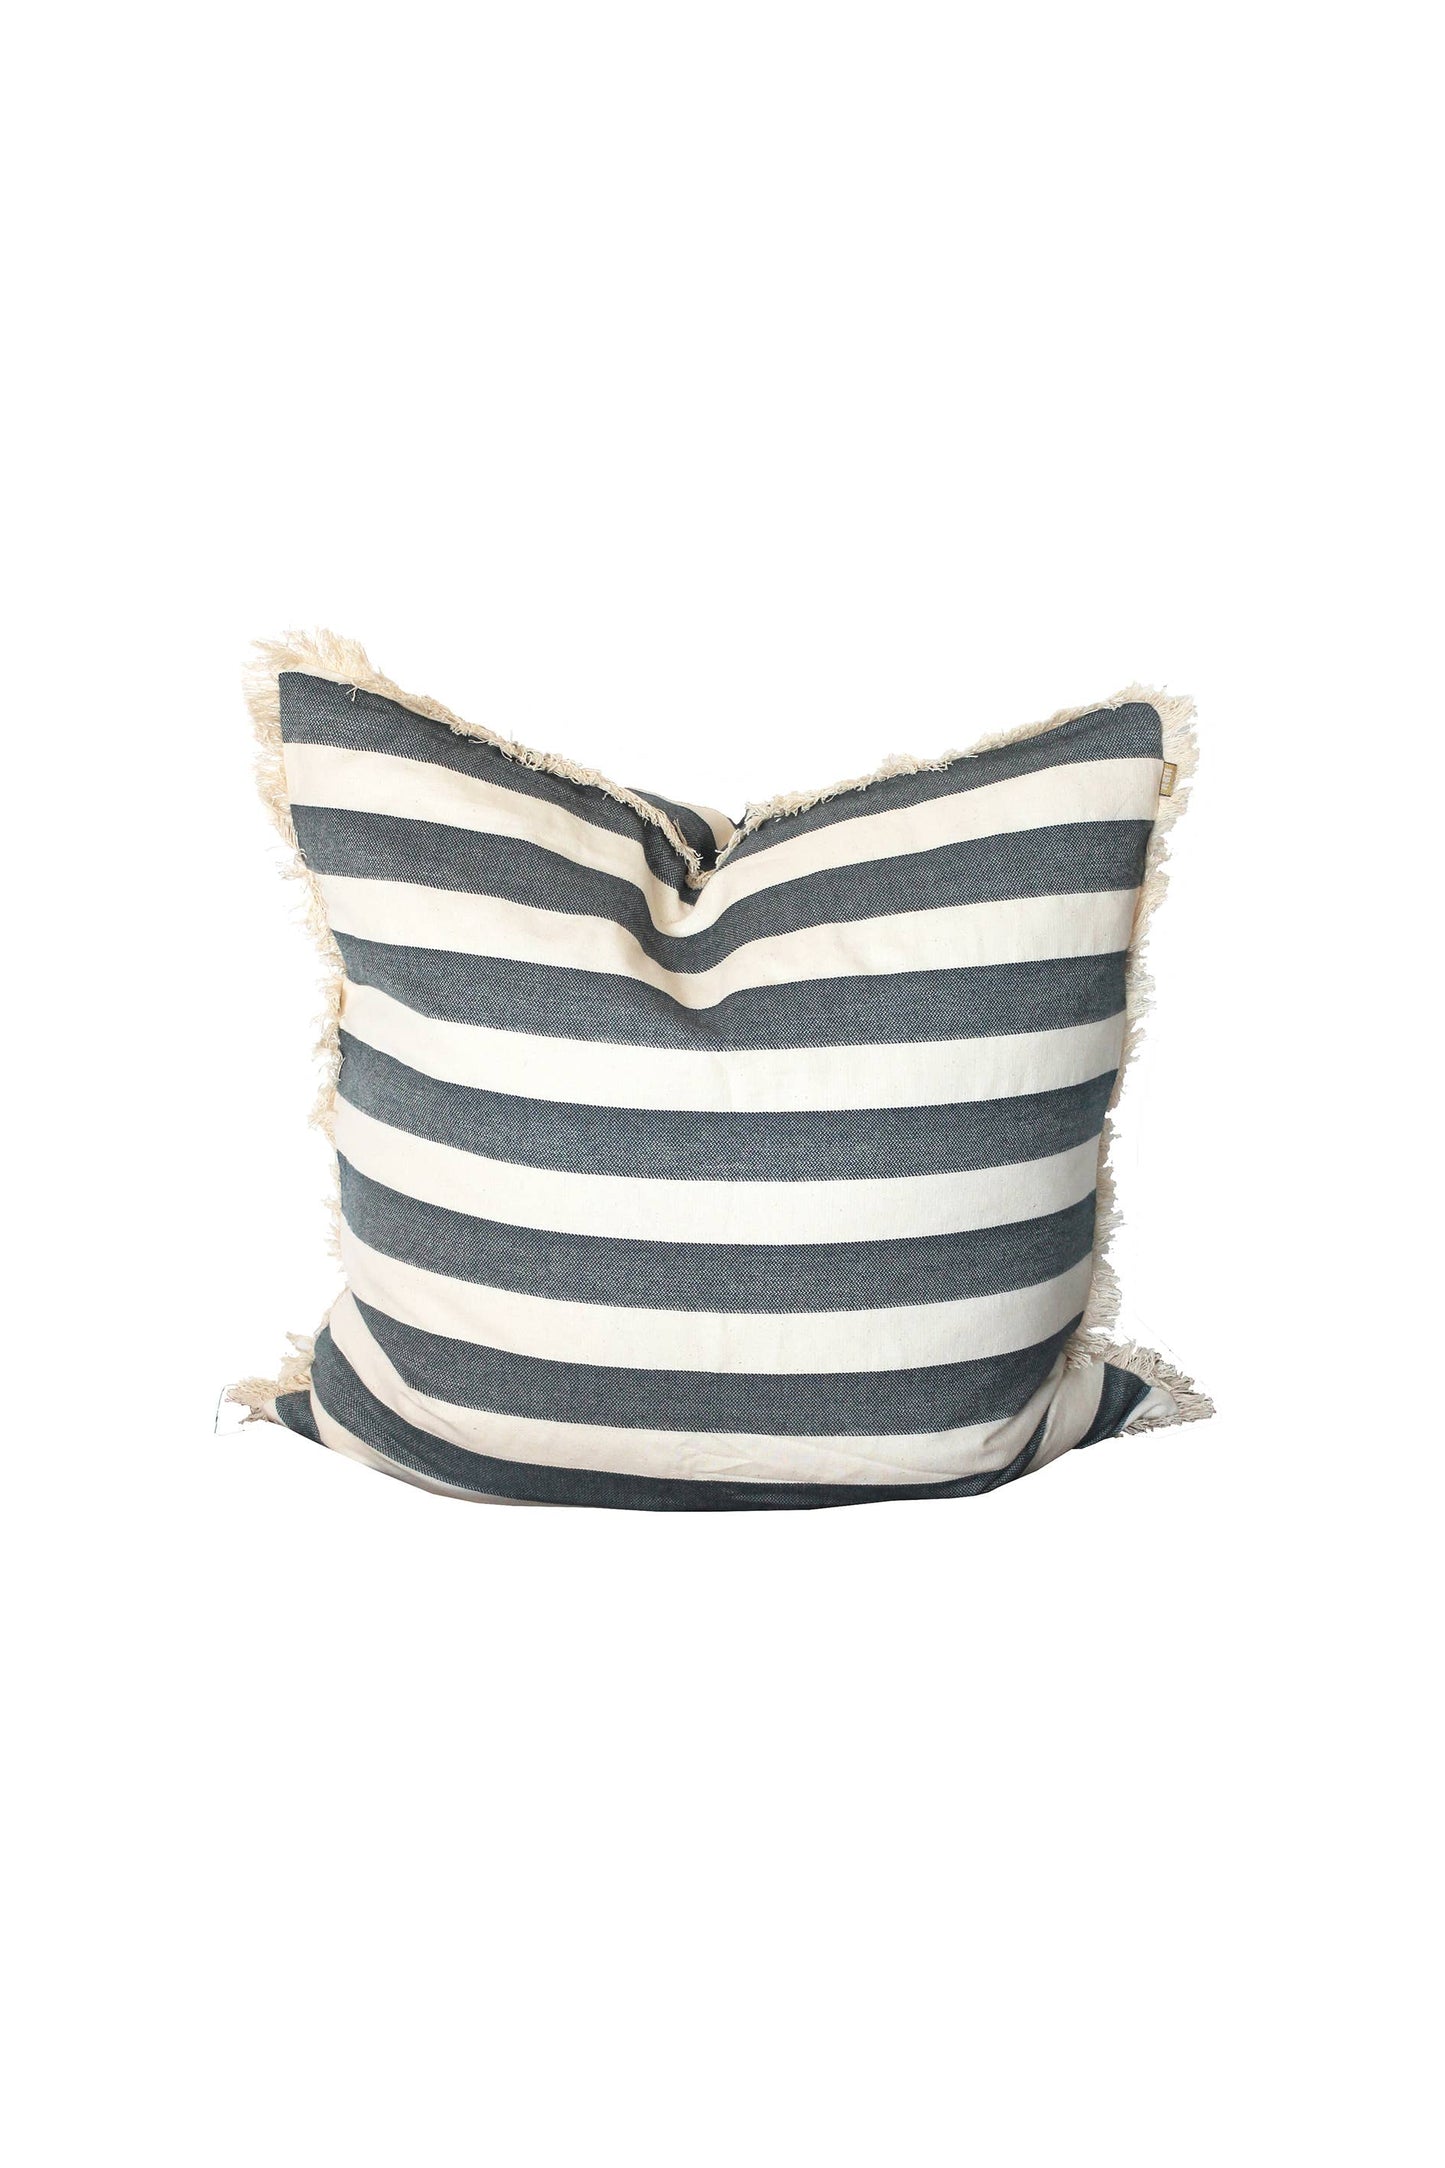 Pillow Wide Stripe 24" x 24" Dark Blue